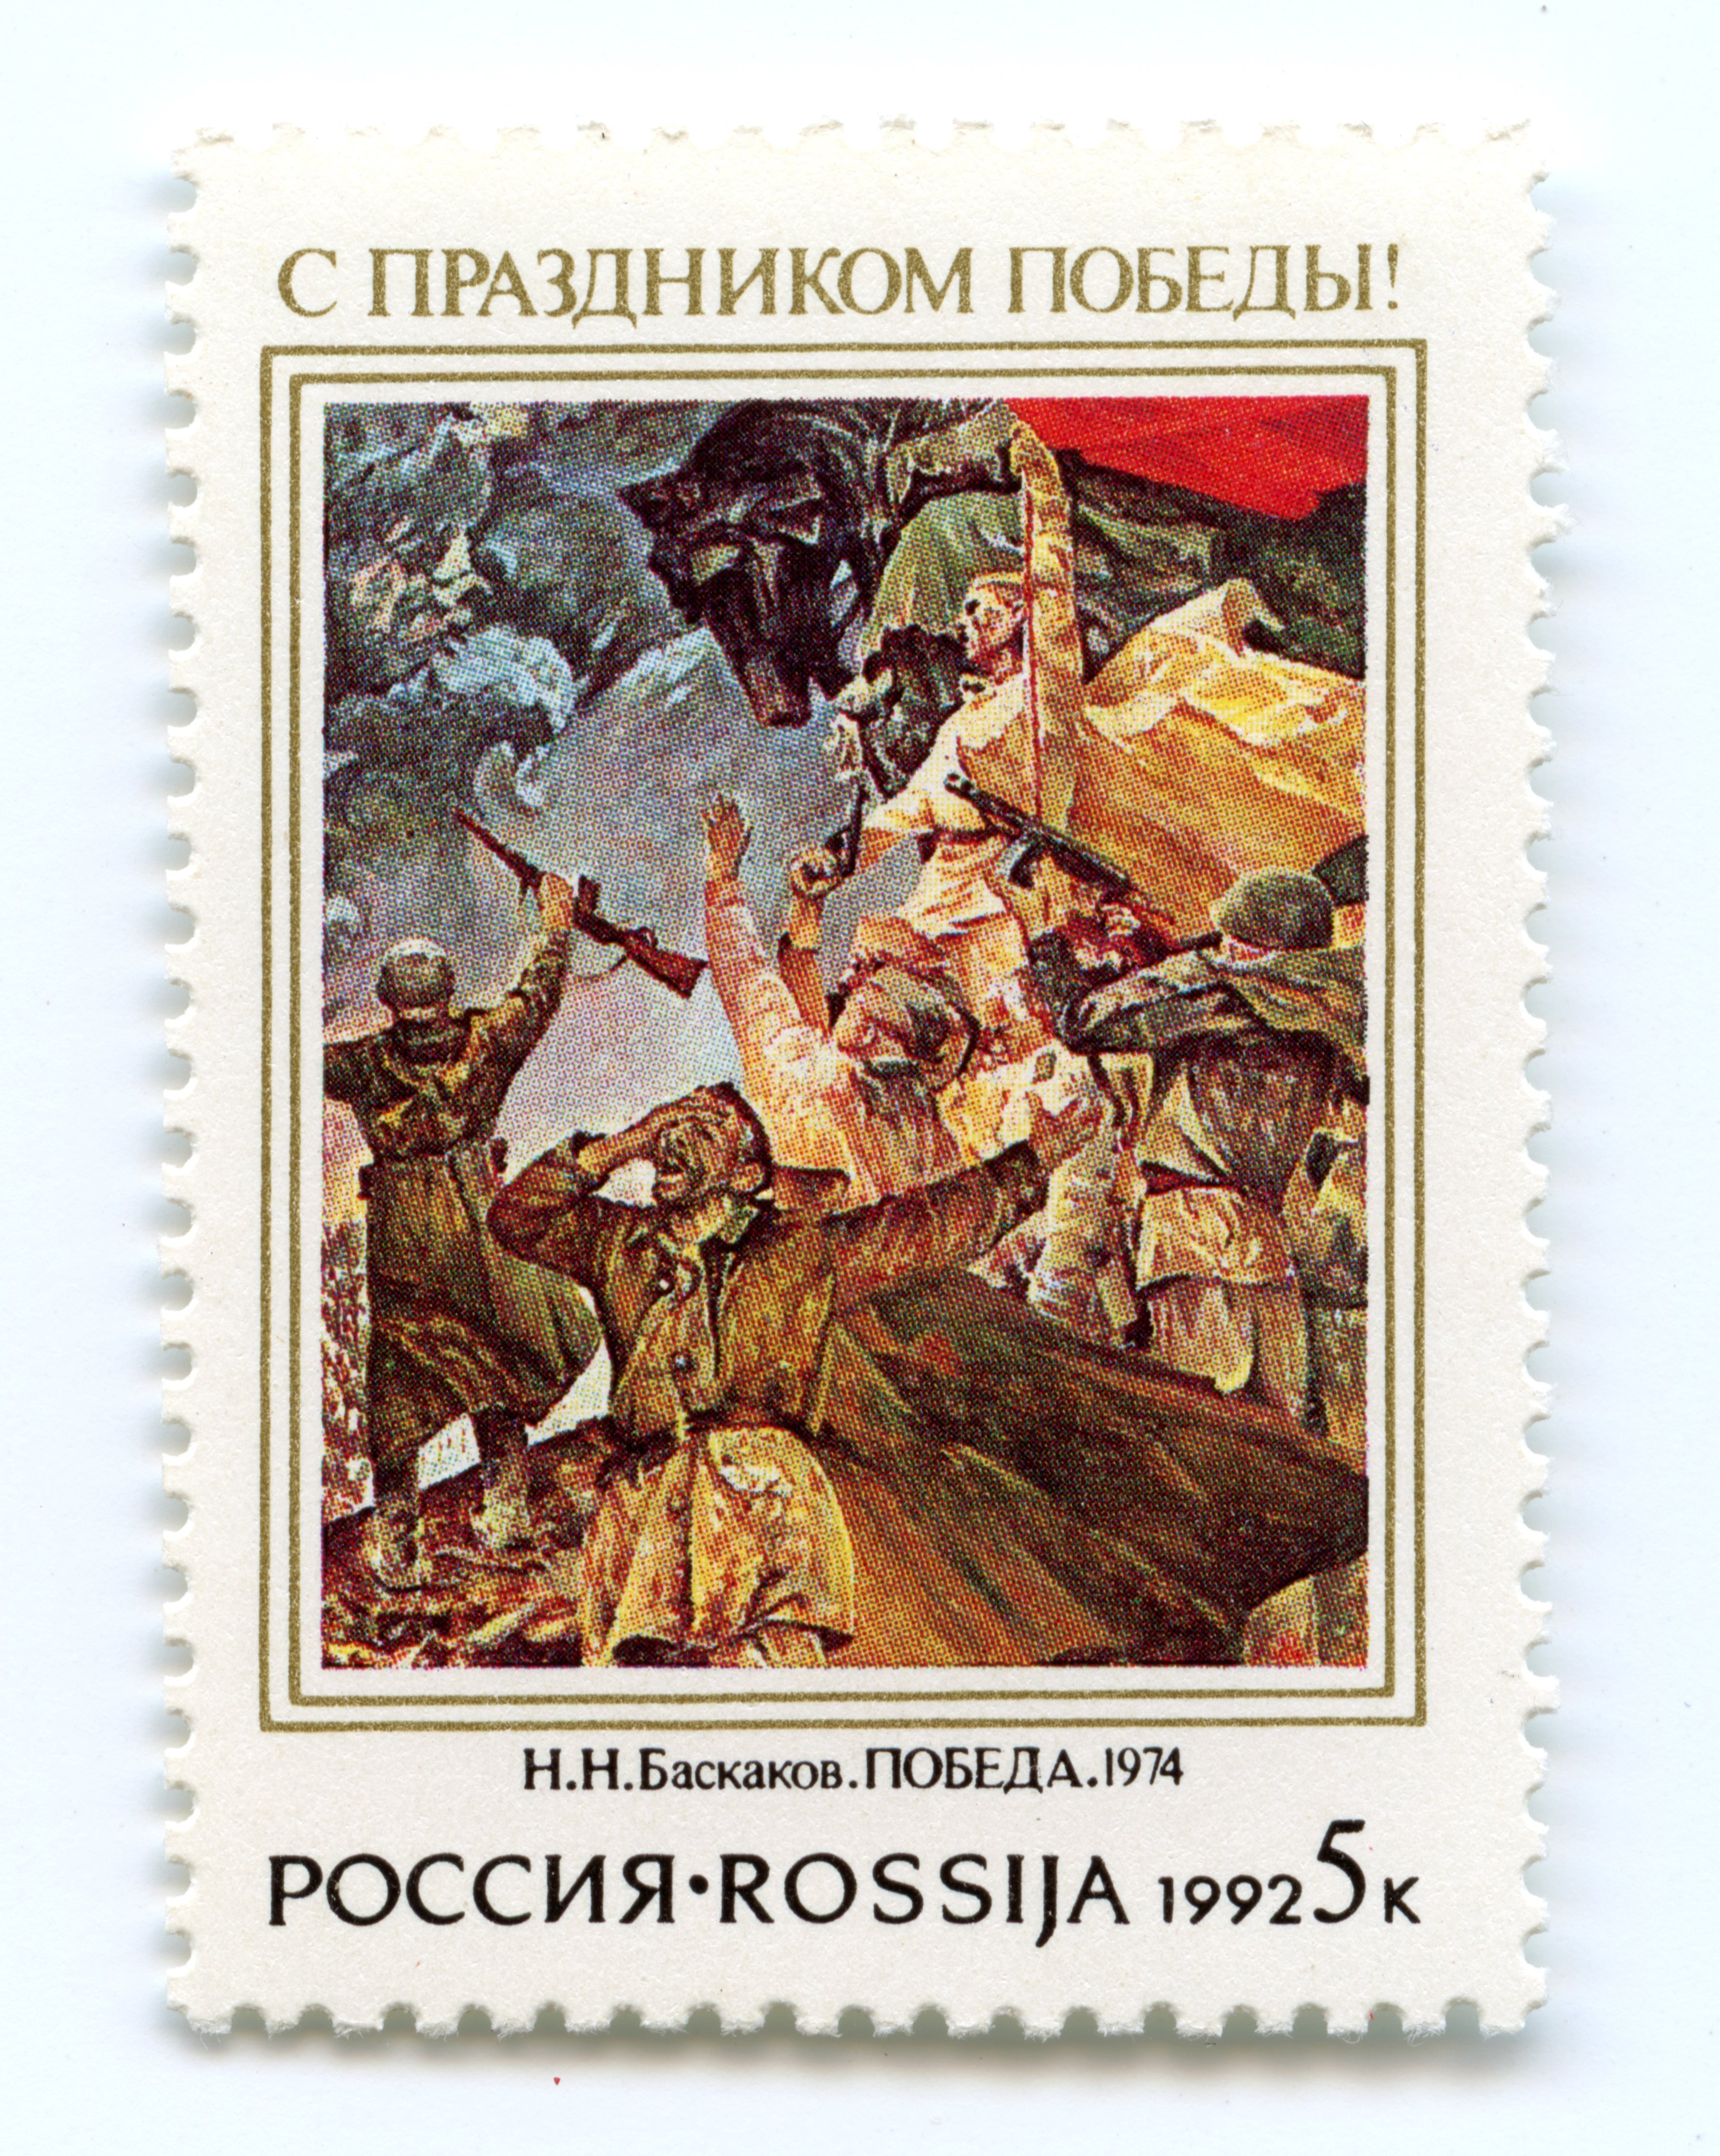 Briefmarke "Zum Tag des Sieges!", Russland, 1992 (Museum Berlin-Karlshorst CC BY-NC-SA)